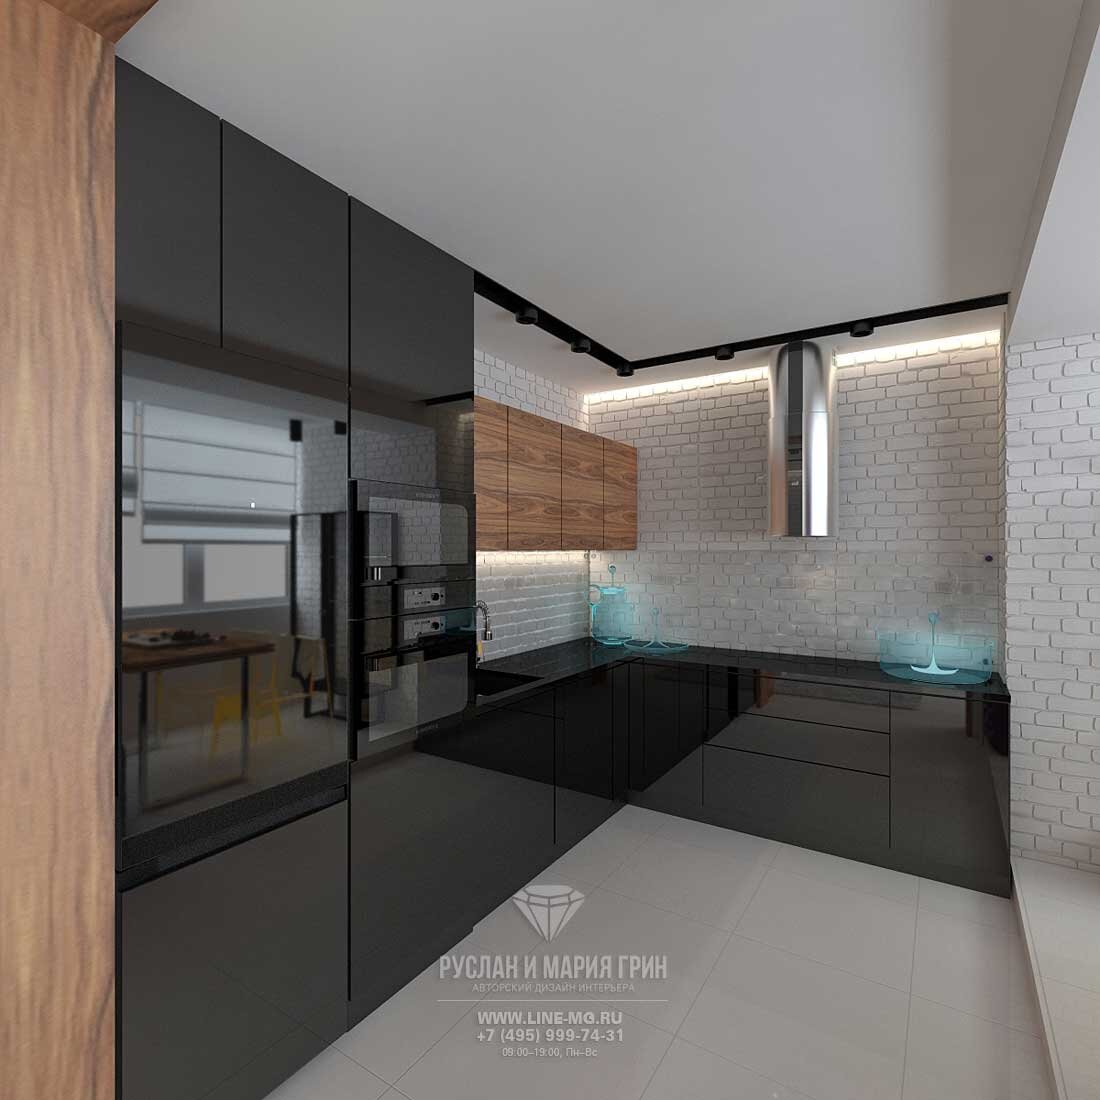 Дизайн кухни площадью 10 кв. метров: создание стильного и функционального интерьера